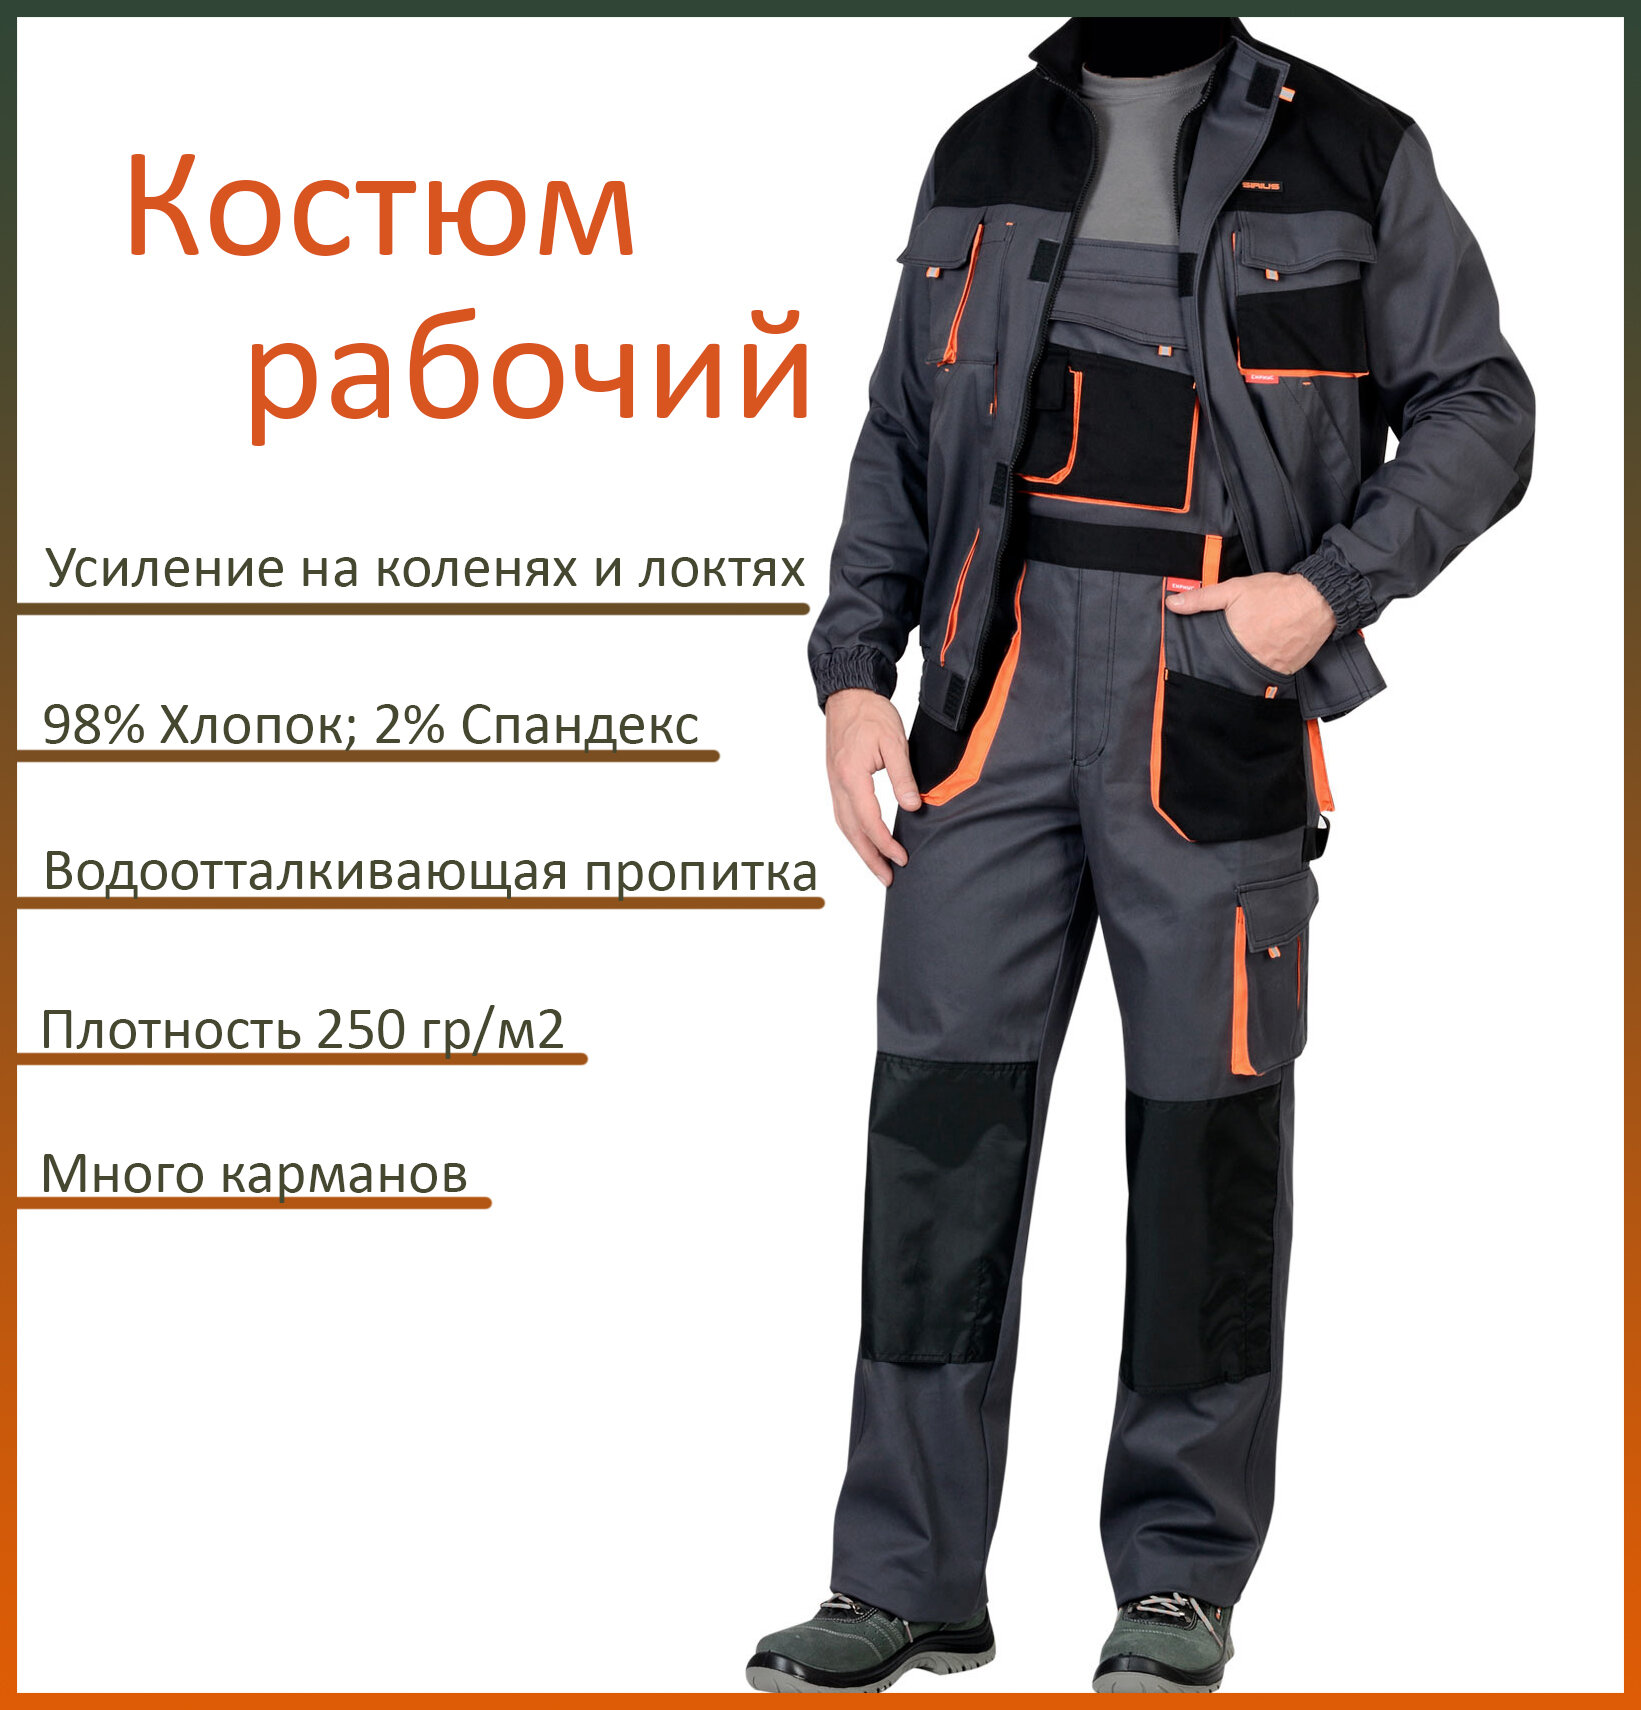 Костюм рабочий арт. 13028/ куртка + полукомбинезон/ серый с оранжевым/ 60-62 рост 182-188